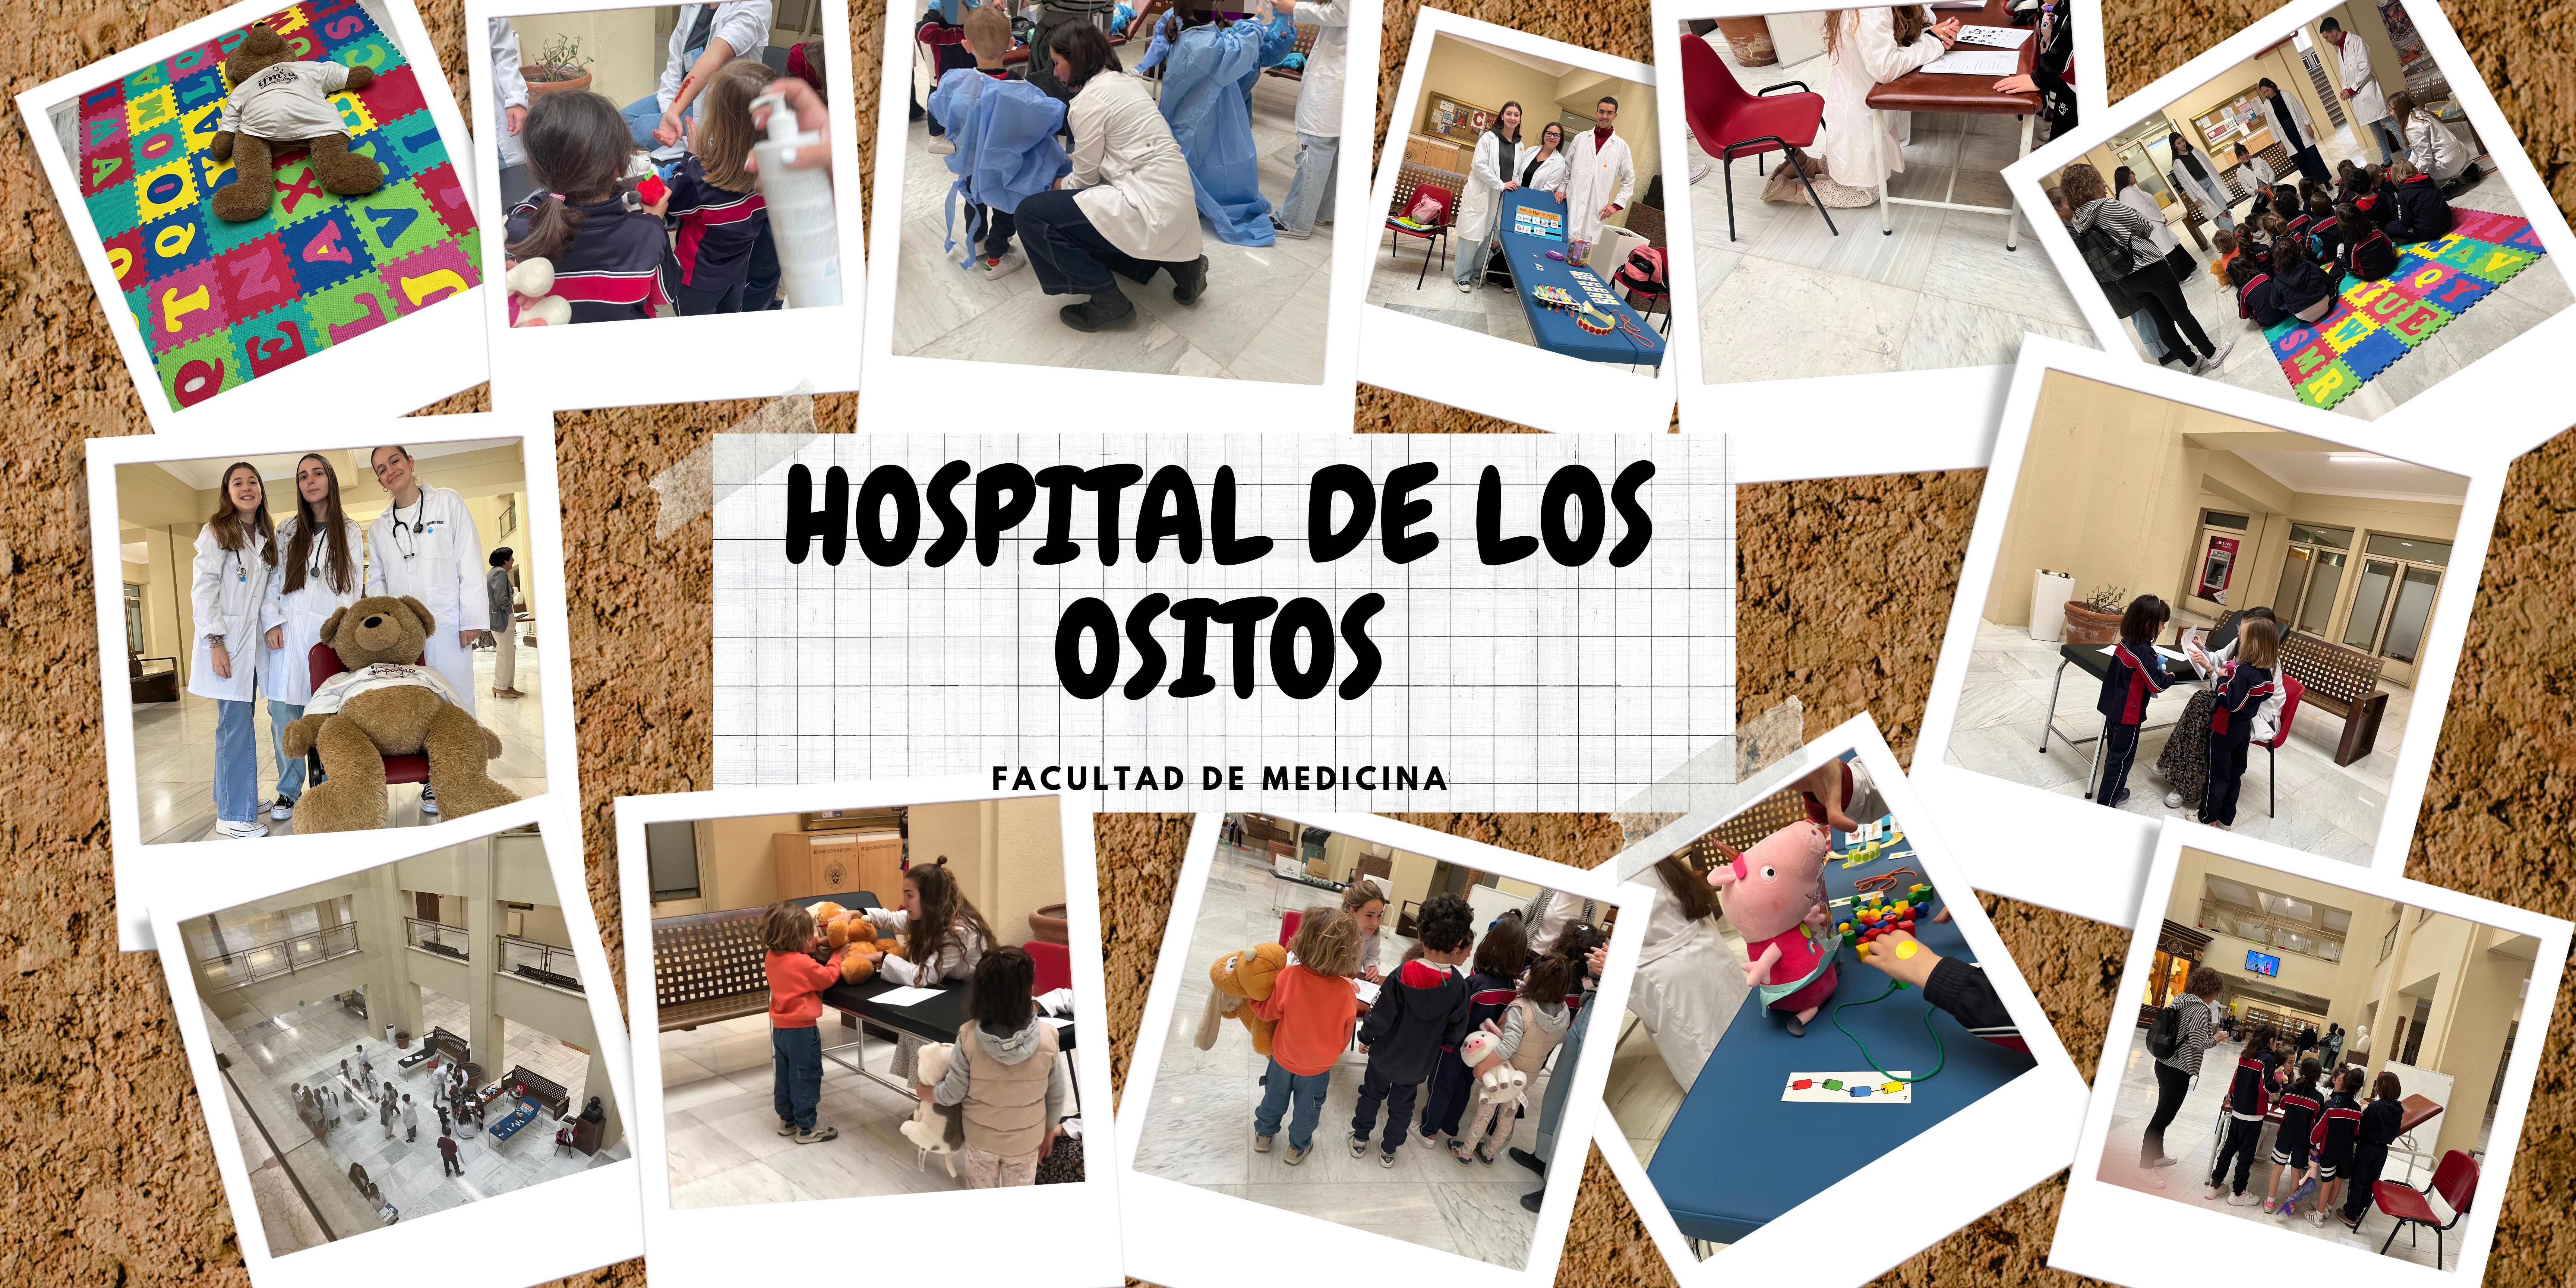 EL HOSPITAL DE LOS OSITOS